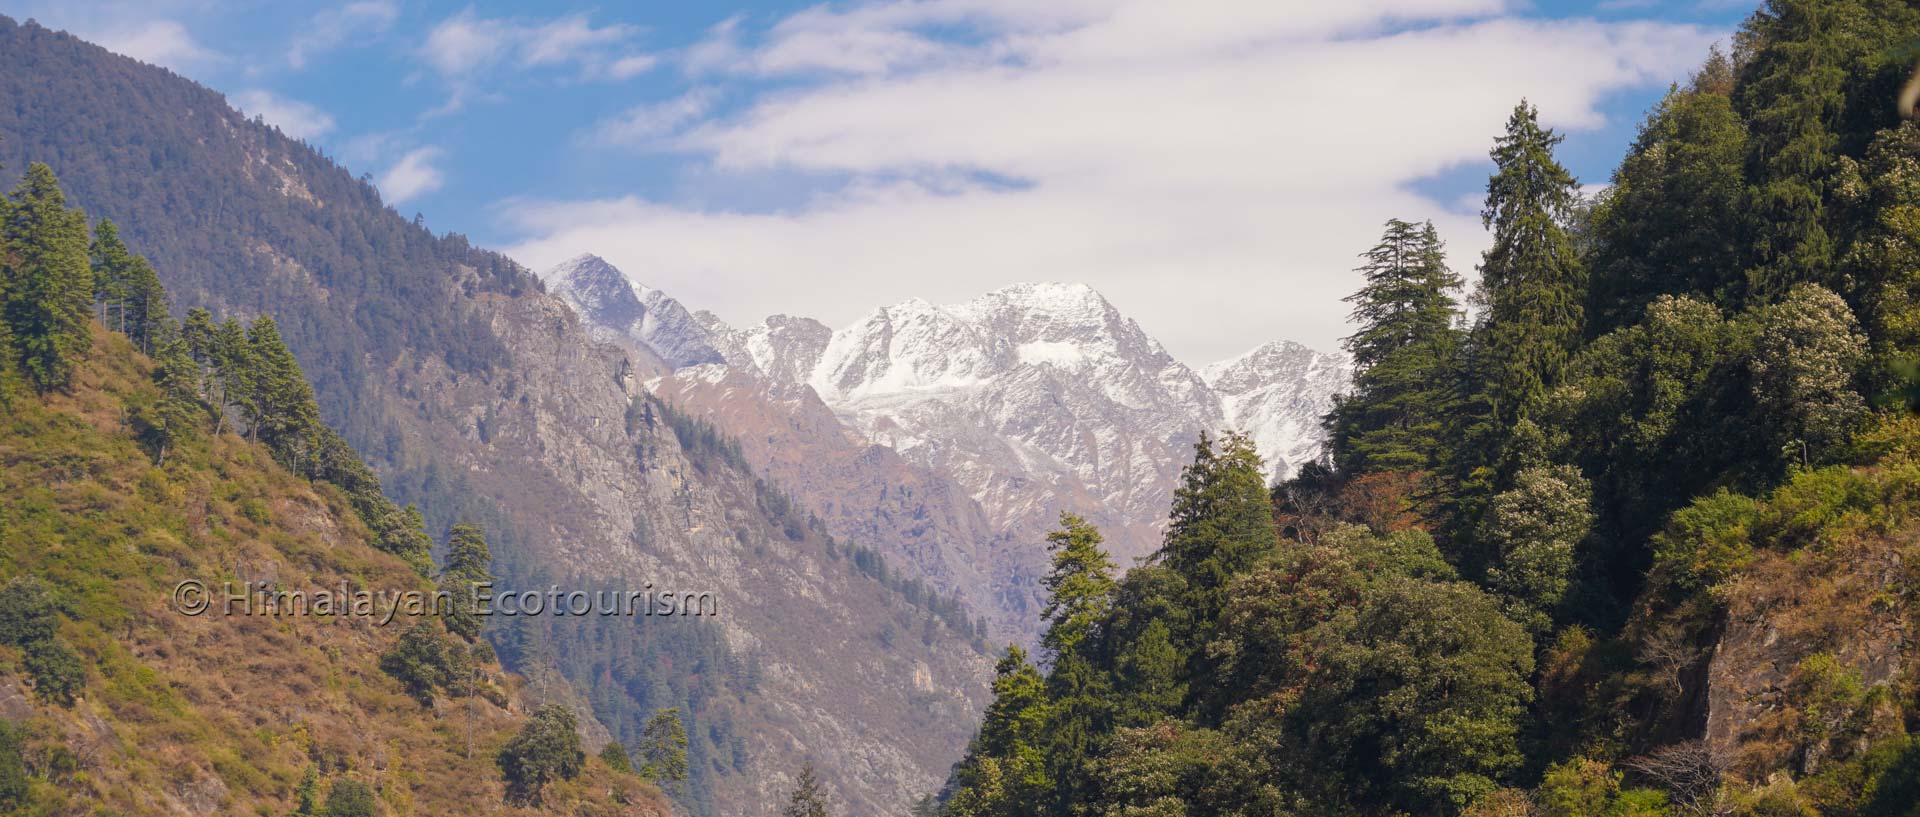 Great Himalayan National Park - Rolla trek views